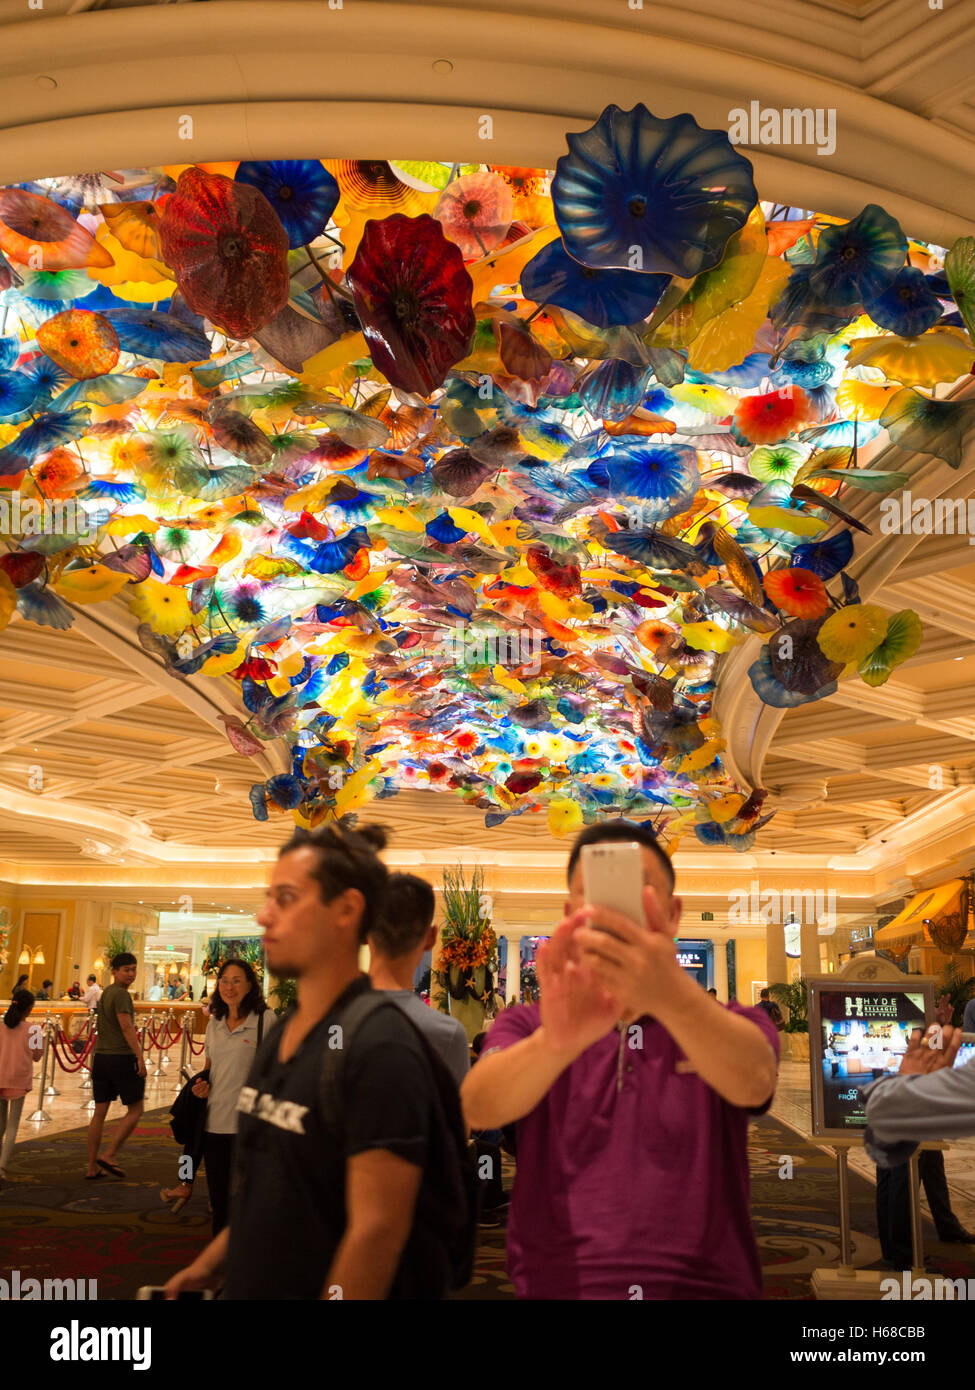 Einnahme von Selfies durch das Bellagio Hotel und Casino Lobby Decke Glas Dekor Stockfoto